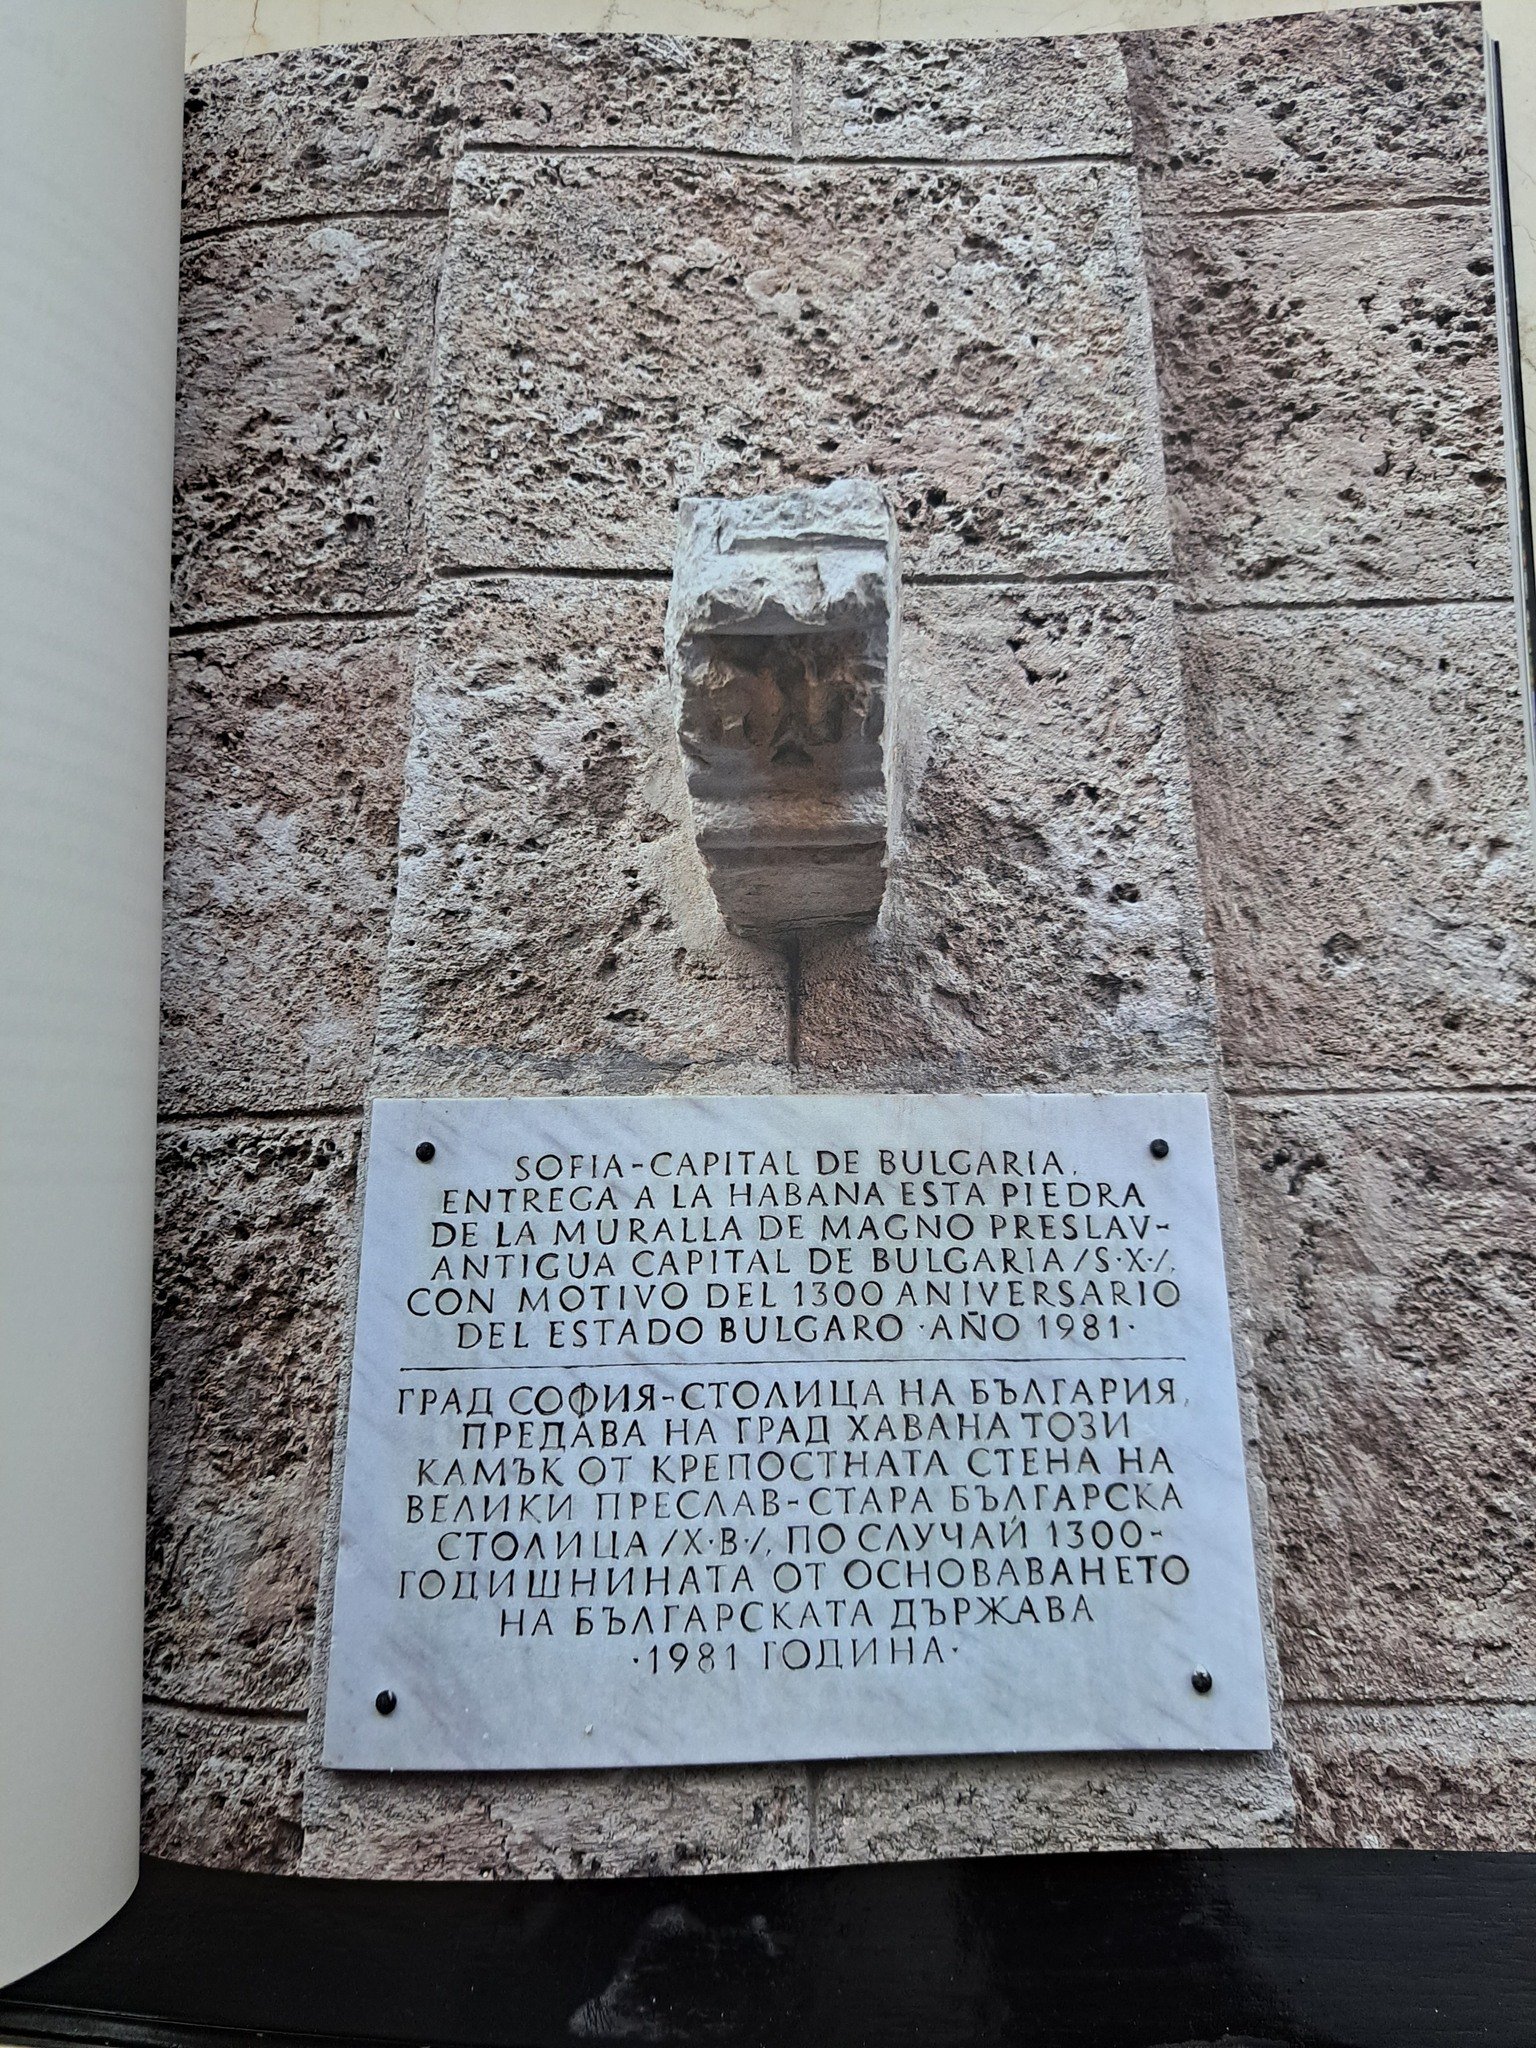  Камък от крепостната стена на старата българска столица - Велики Преслав. Той е подарен на Хавана по случай 1300 години от основаването на Българската държава.